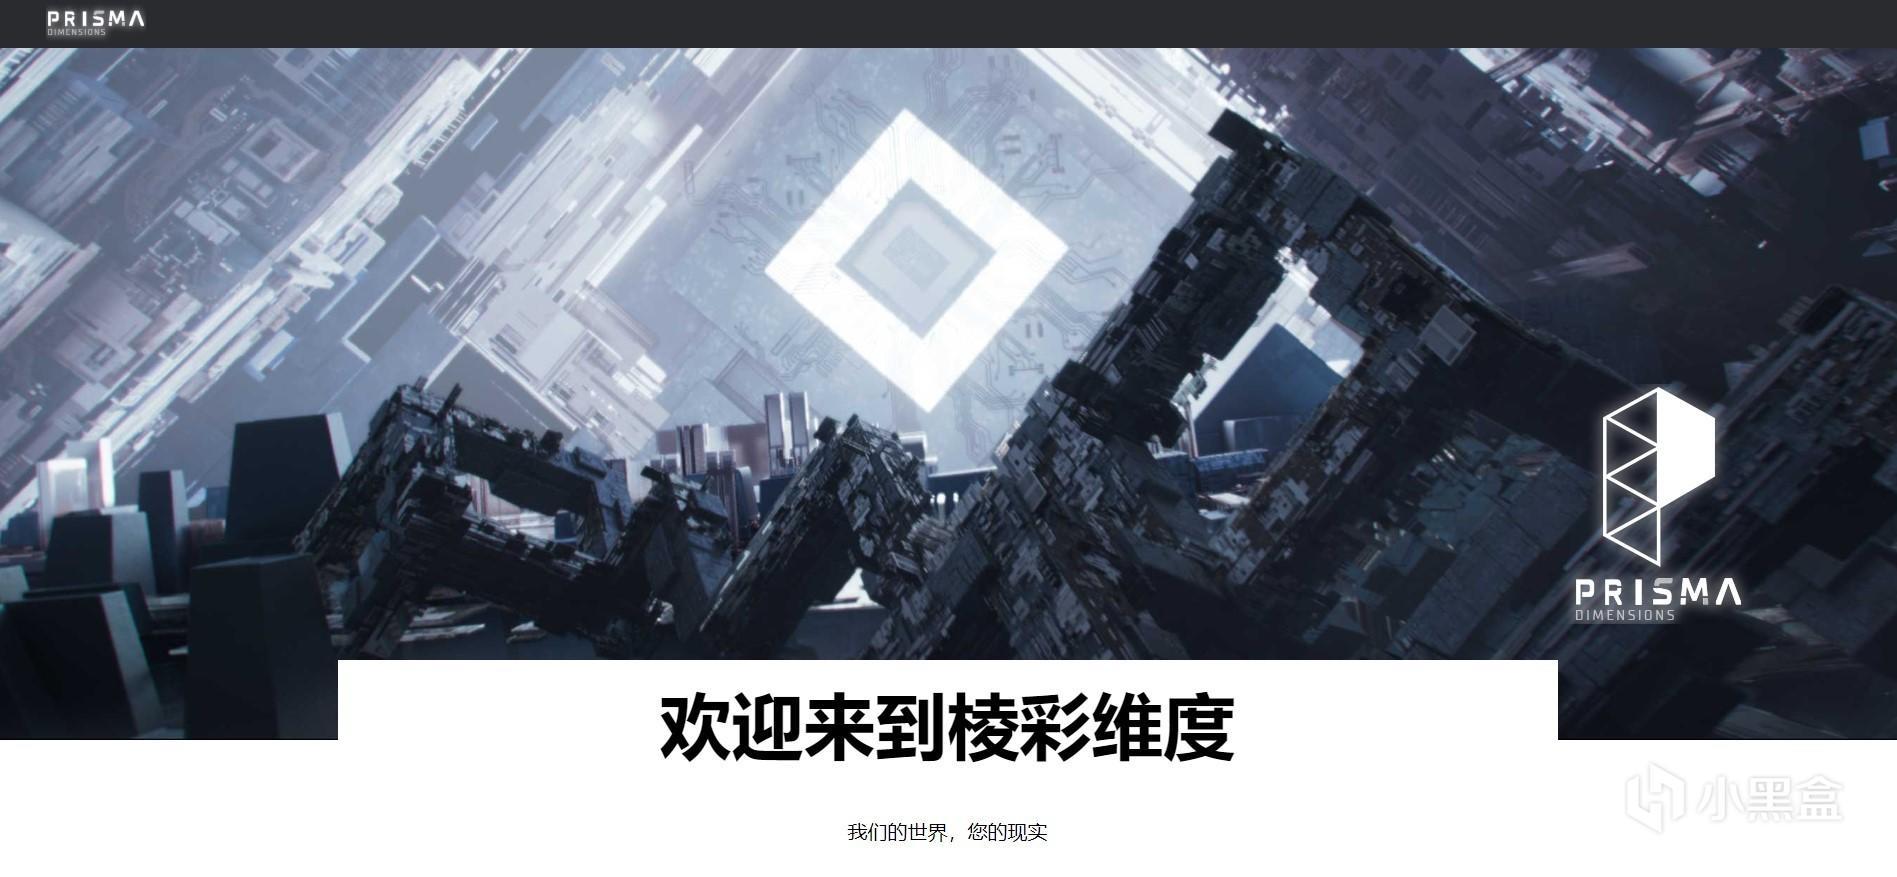 育碧大逃杀新作《Hyper Scape》中文网站“棱彩维度”上线 2%title%